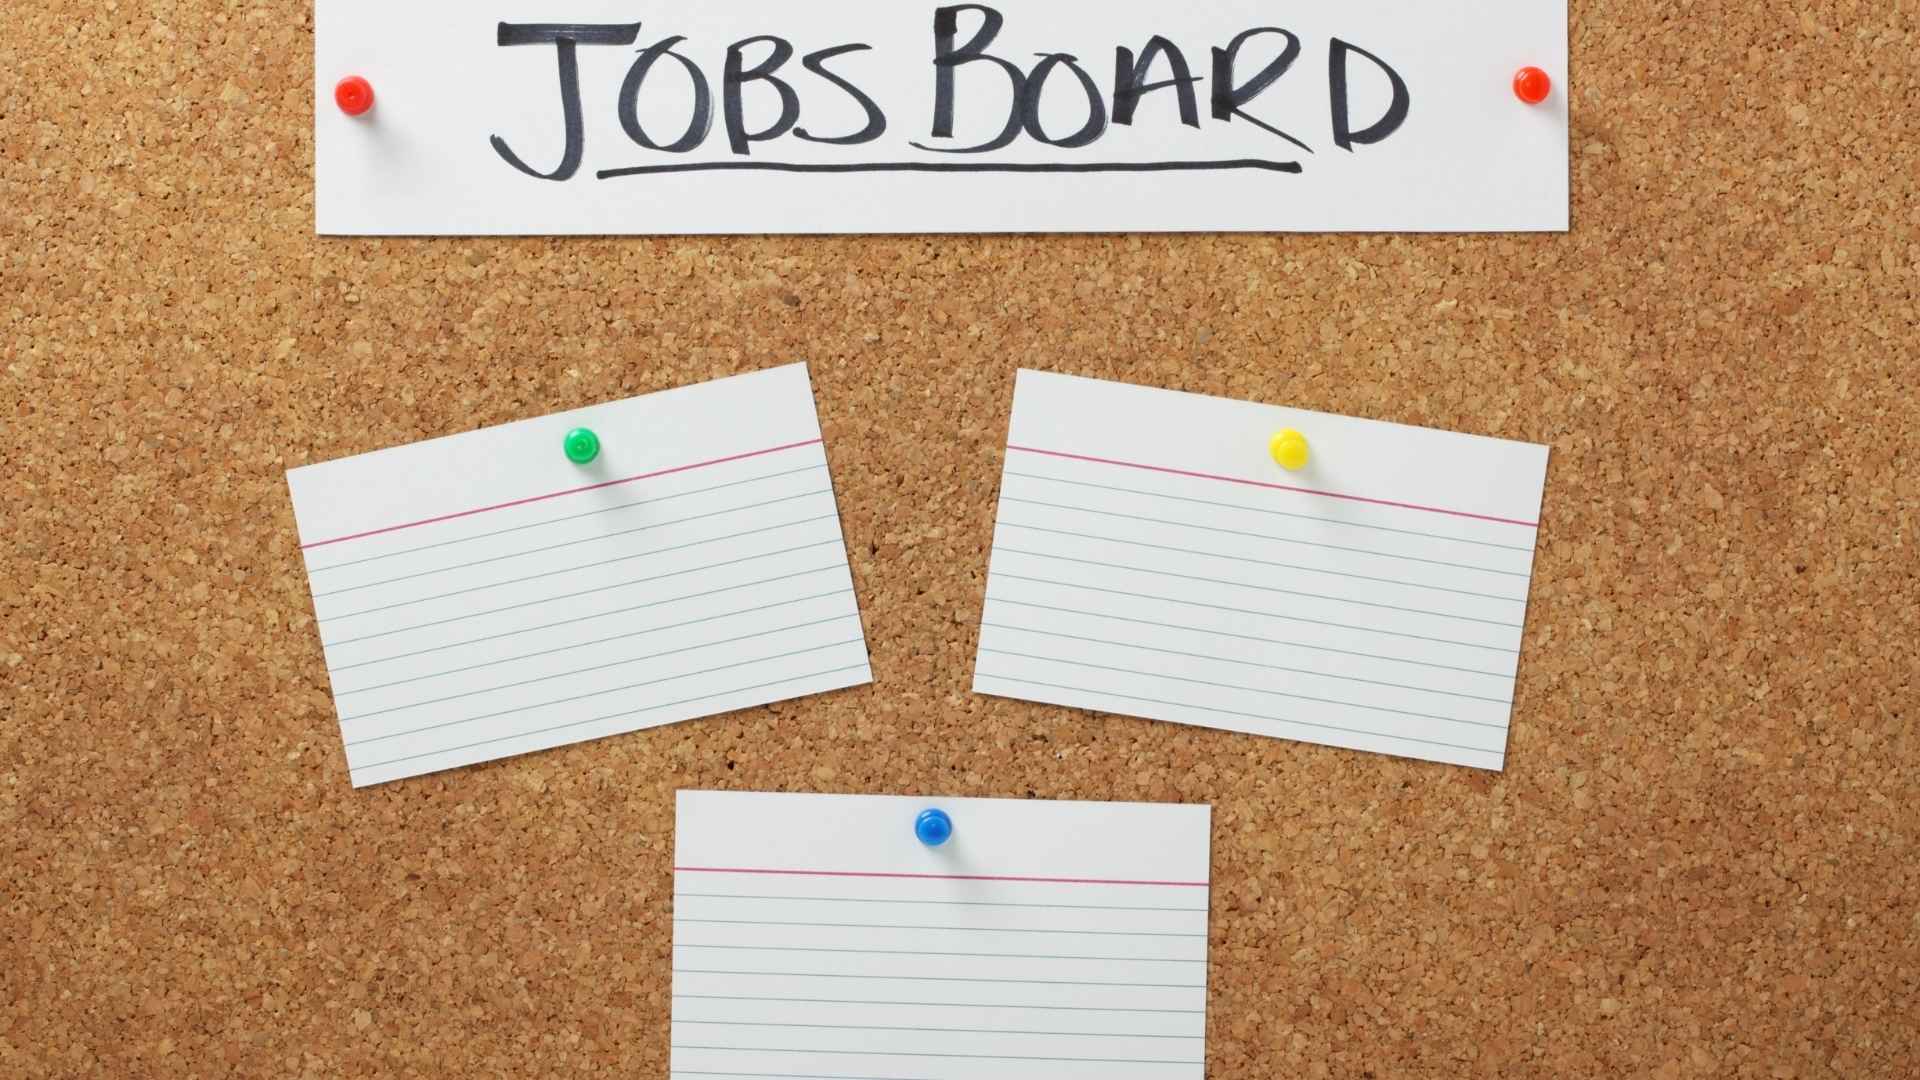 Conseils pour les offres d'emploi inclusives